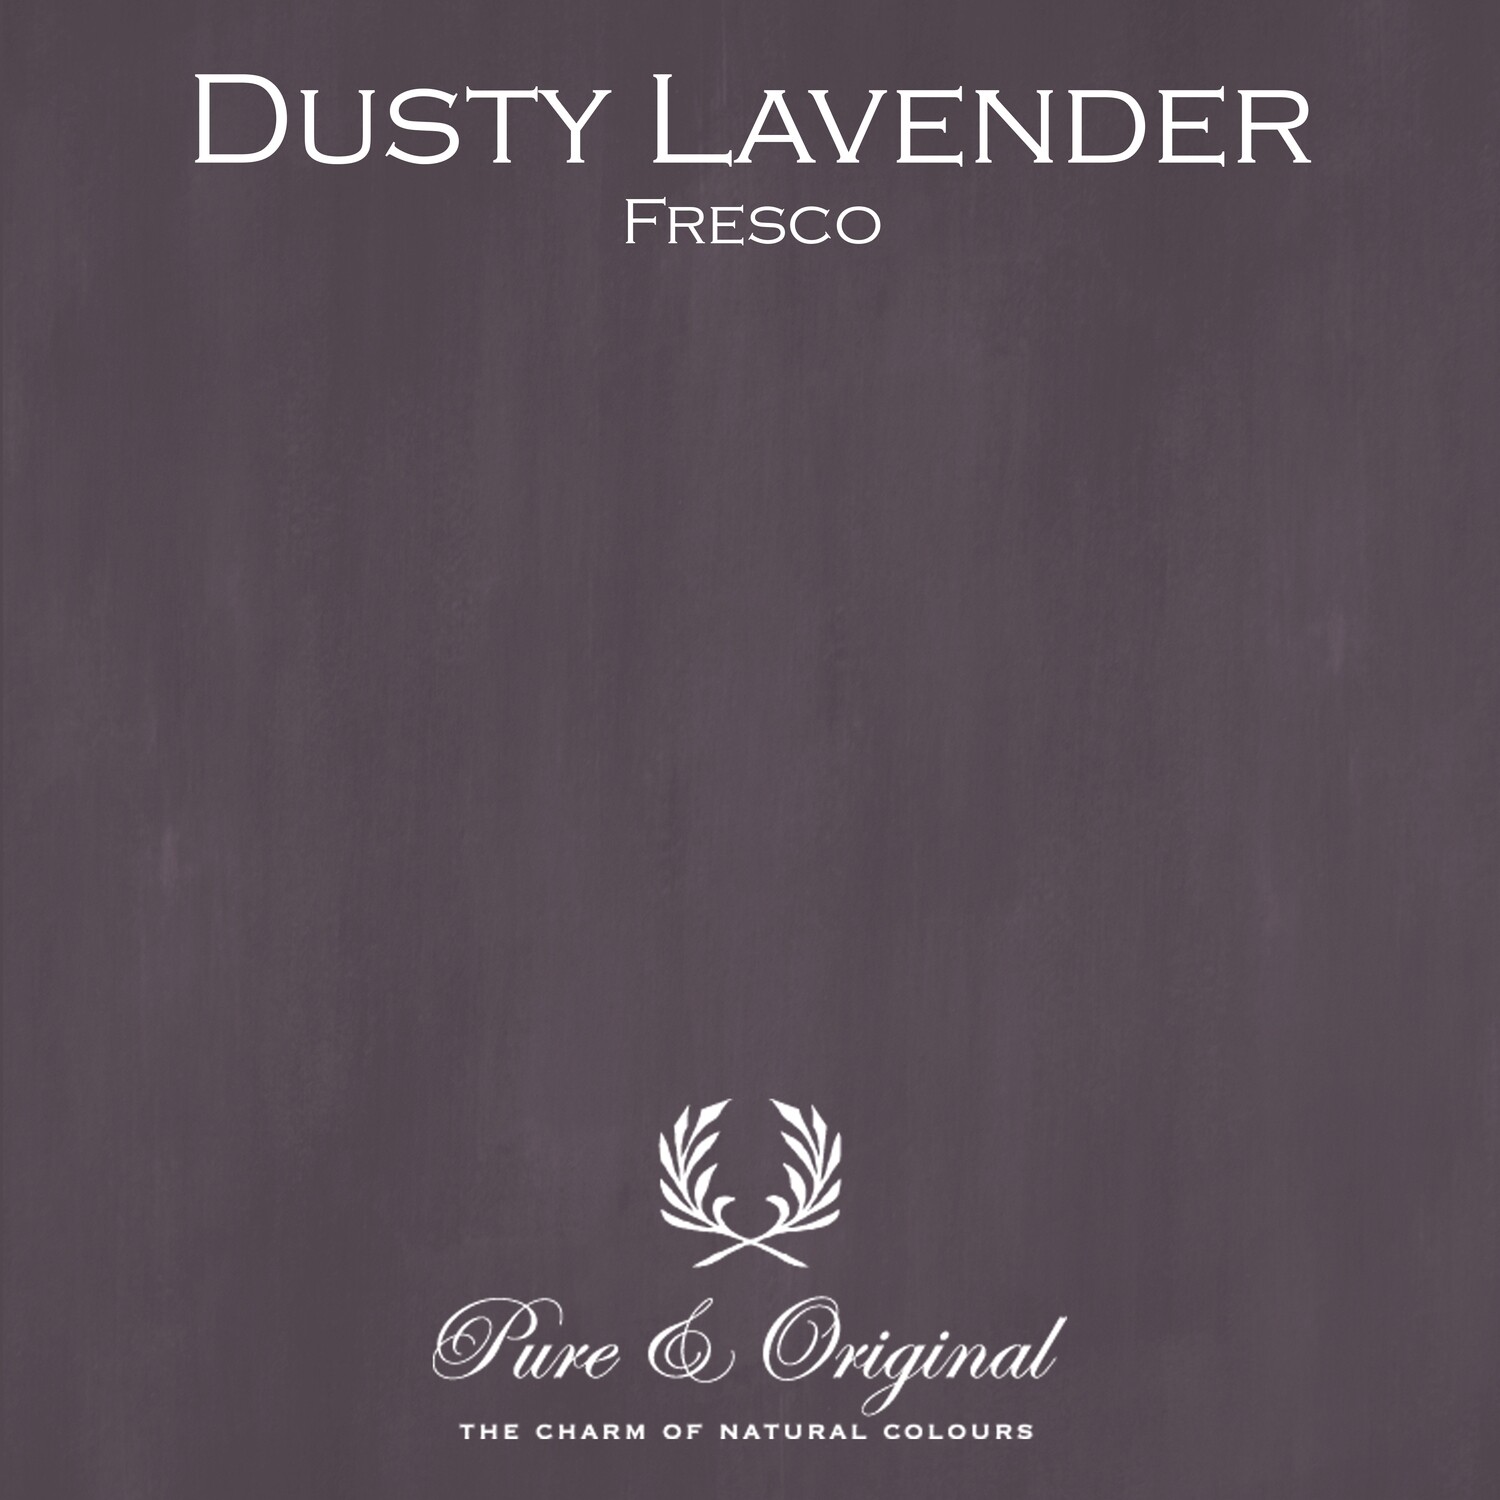 Dusty Lavender Fresco